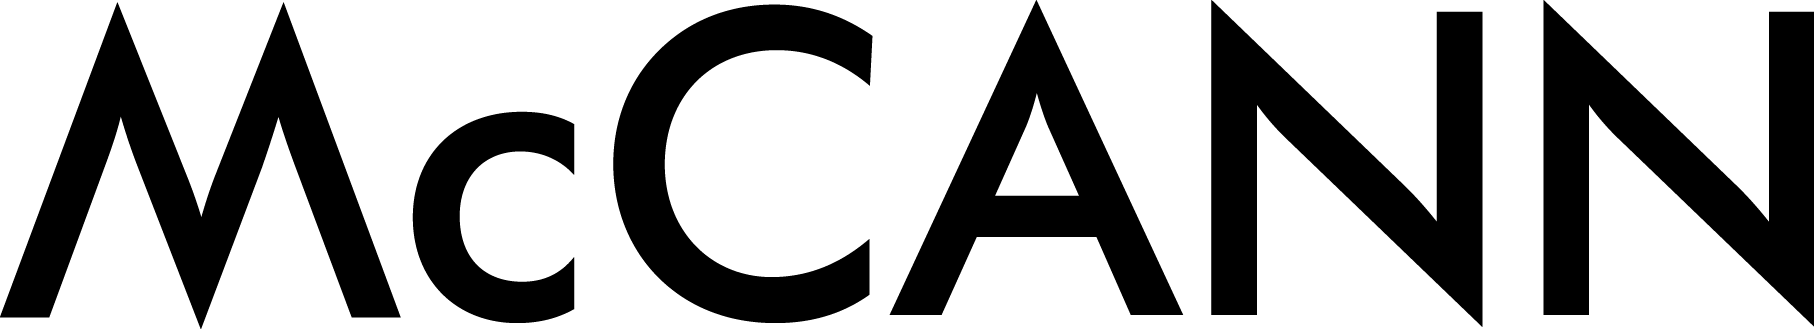 McCann-logo